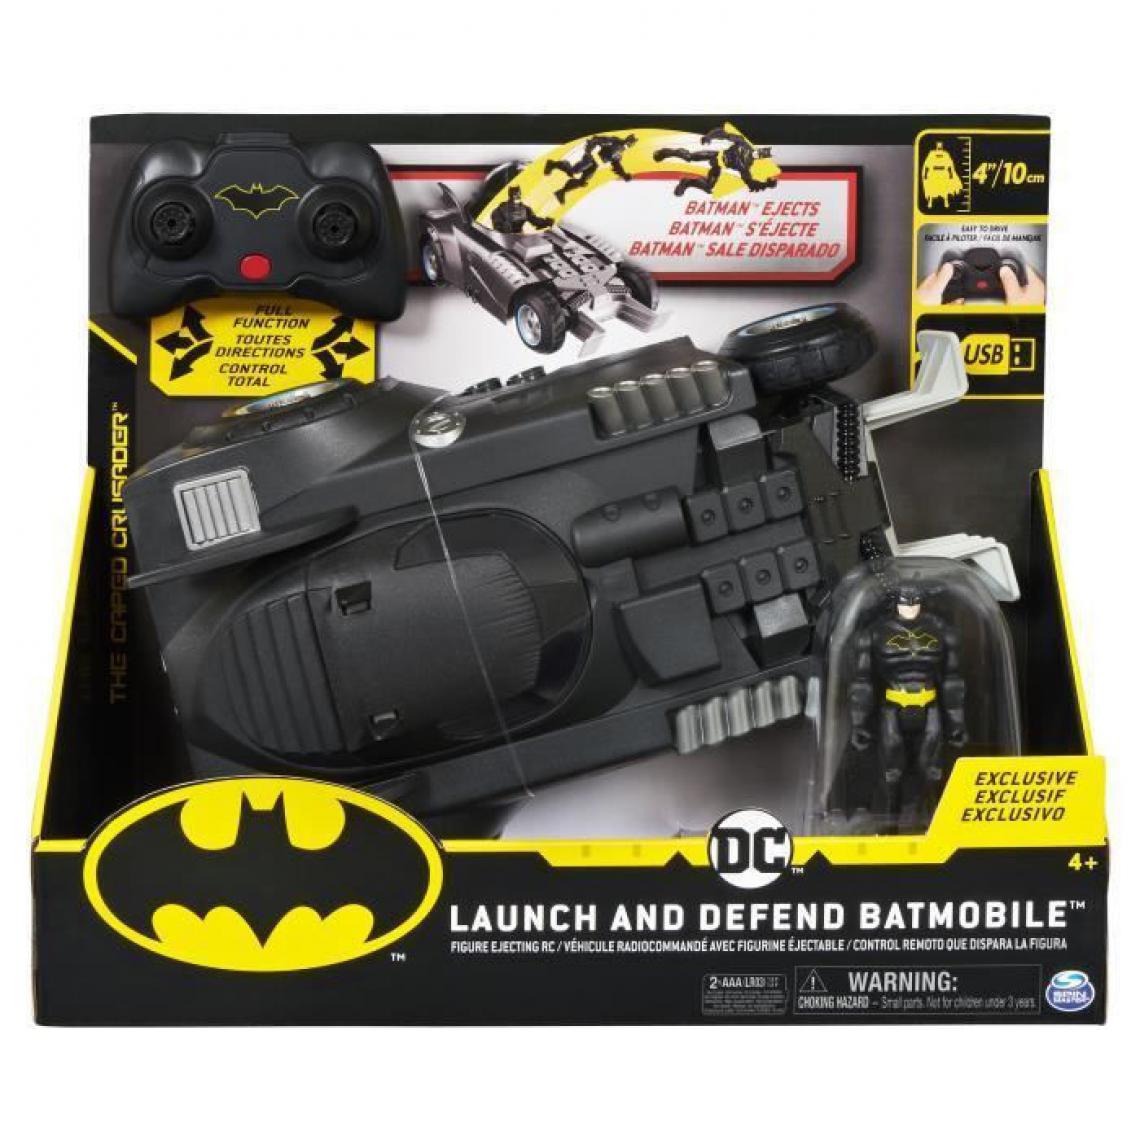 Batman - DC COMICS BATMAN - BATMOBILE RC deluxe - 6055747 - Voiture Vehicule radiocommandee - Films et séries